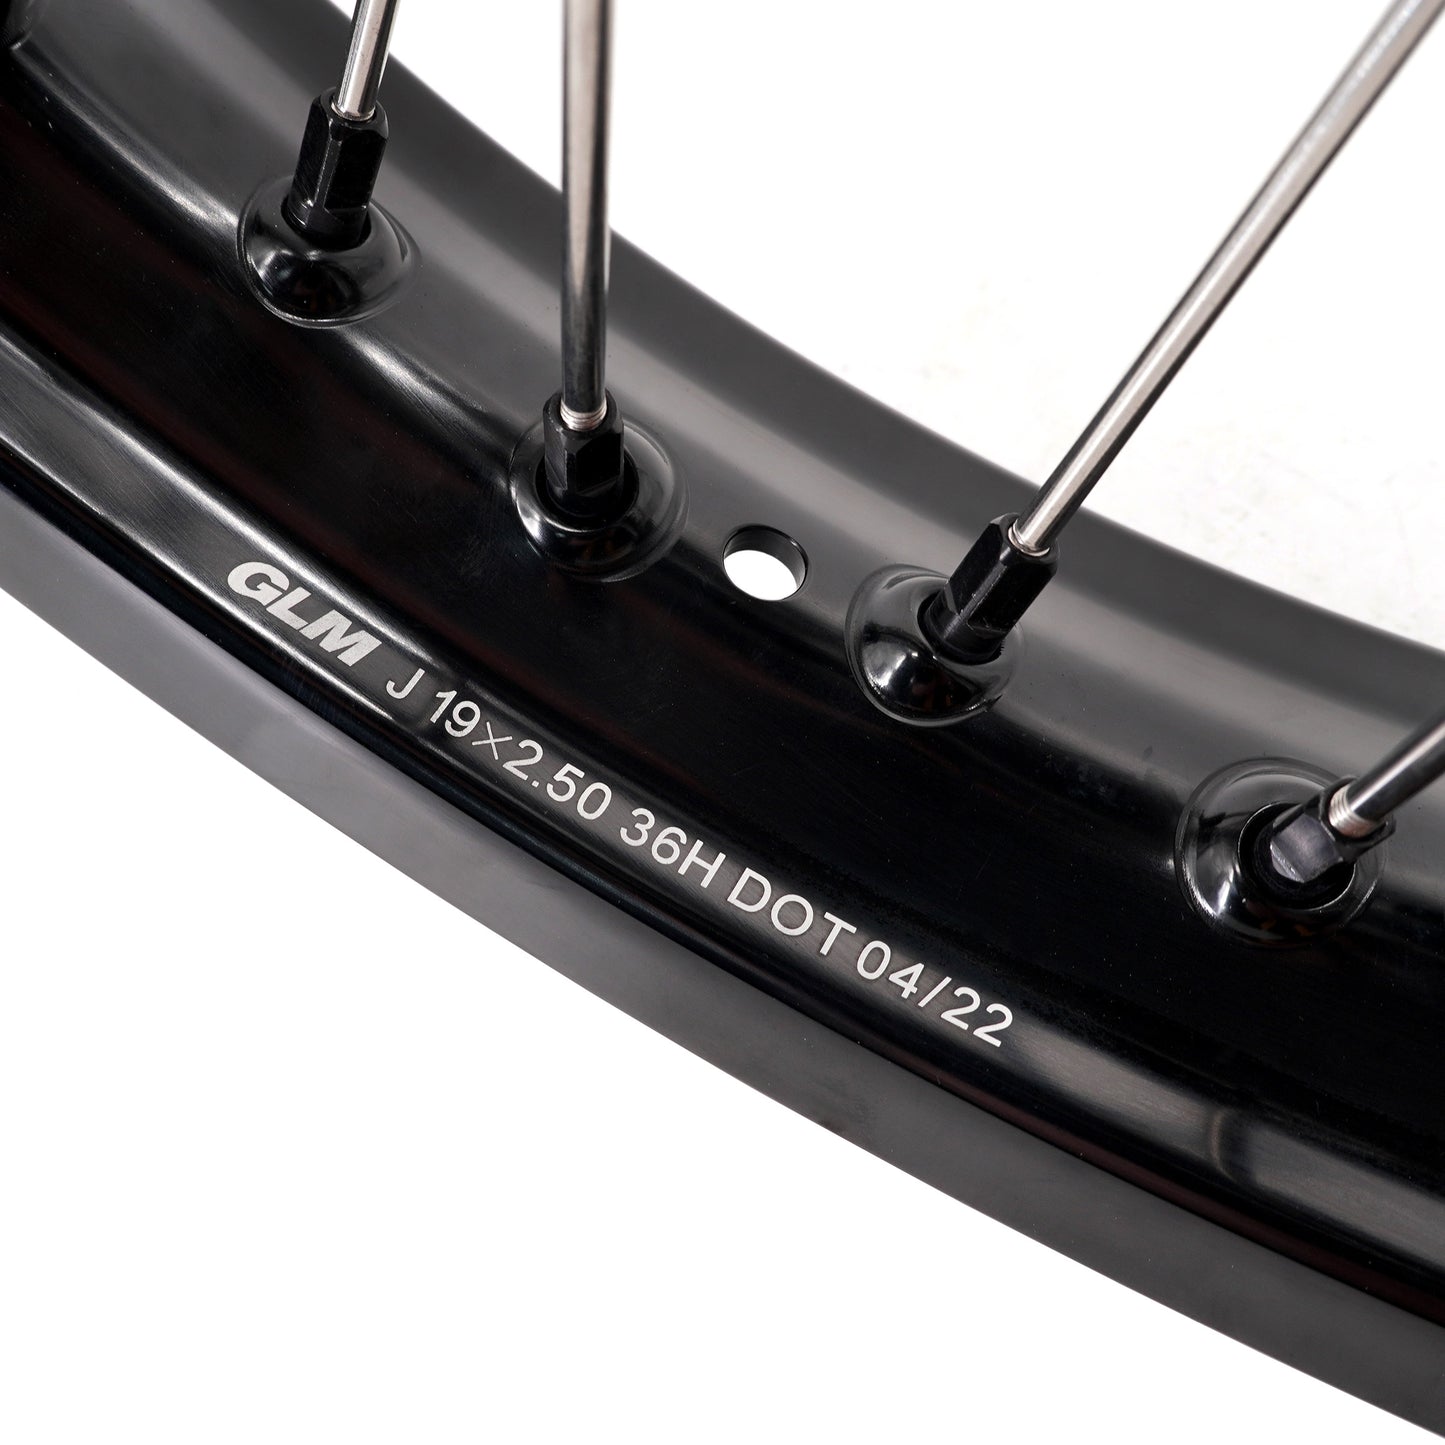 KKE 2.5*19 & 3.5*17 Dirtbike Tubed Spoke Wheels Rims Fit KTM 390 Adventure 2020-2021 Black